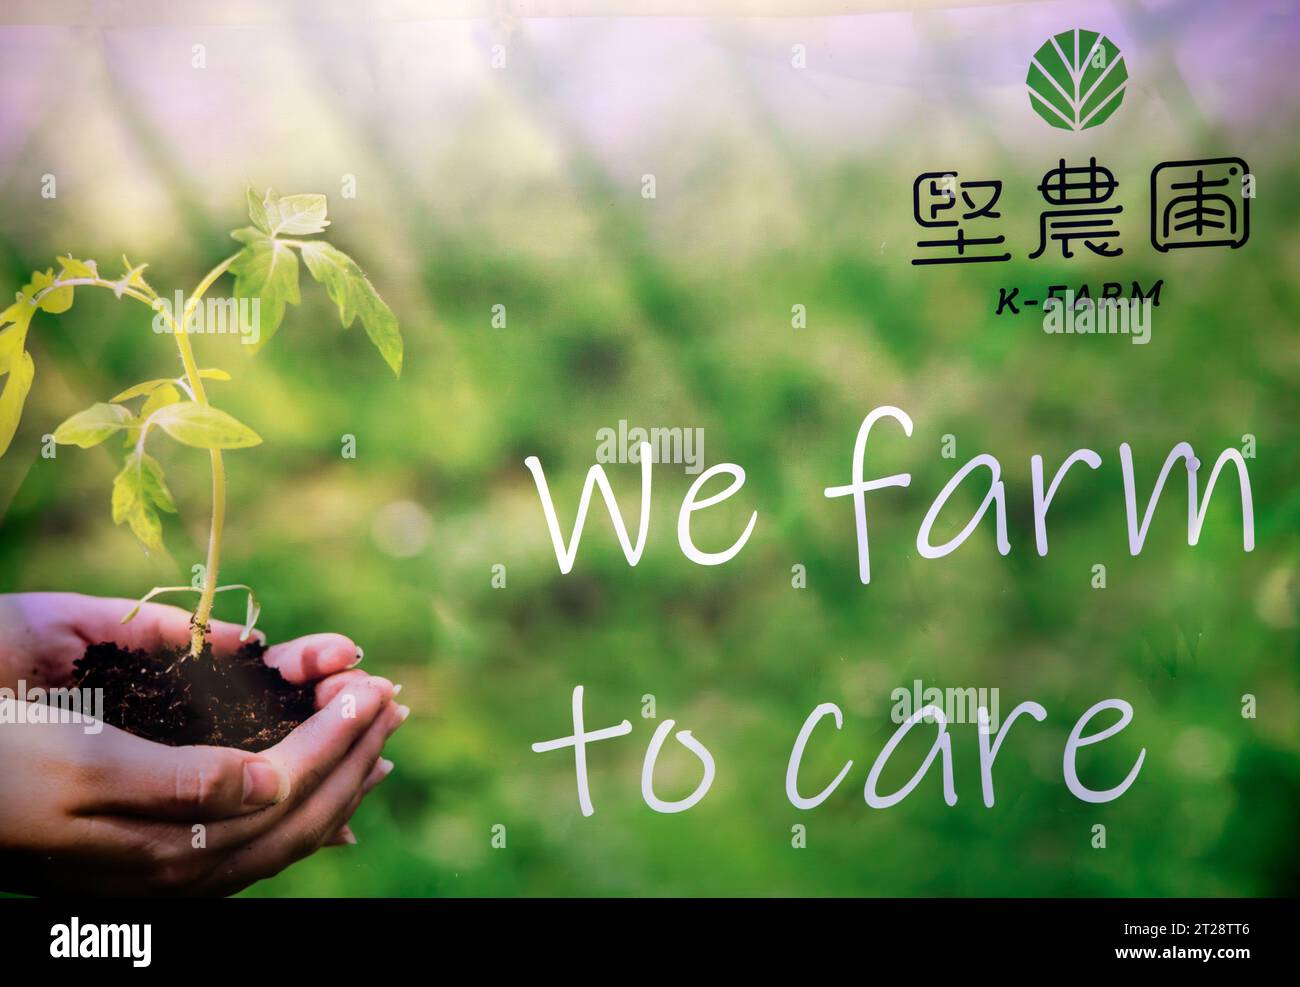 K-FARM der erste städtische Bauernhof in Hongkong, der Hydrokultur, Aquaponik und biologische Landwirtschaftssysteme umfasst. Hongkong, China. Stockfoto